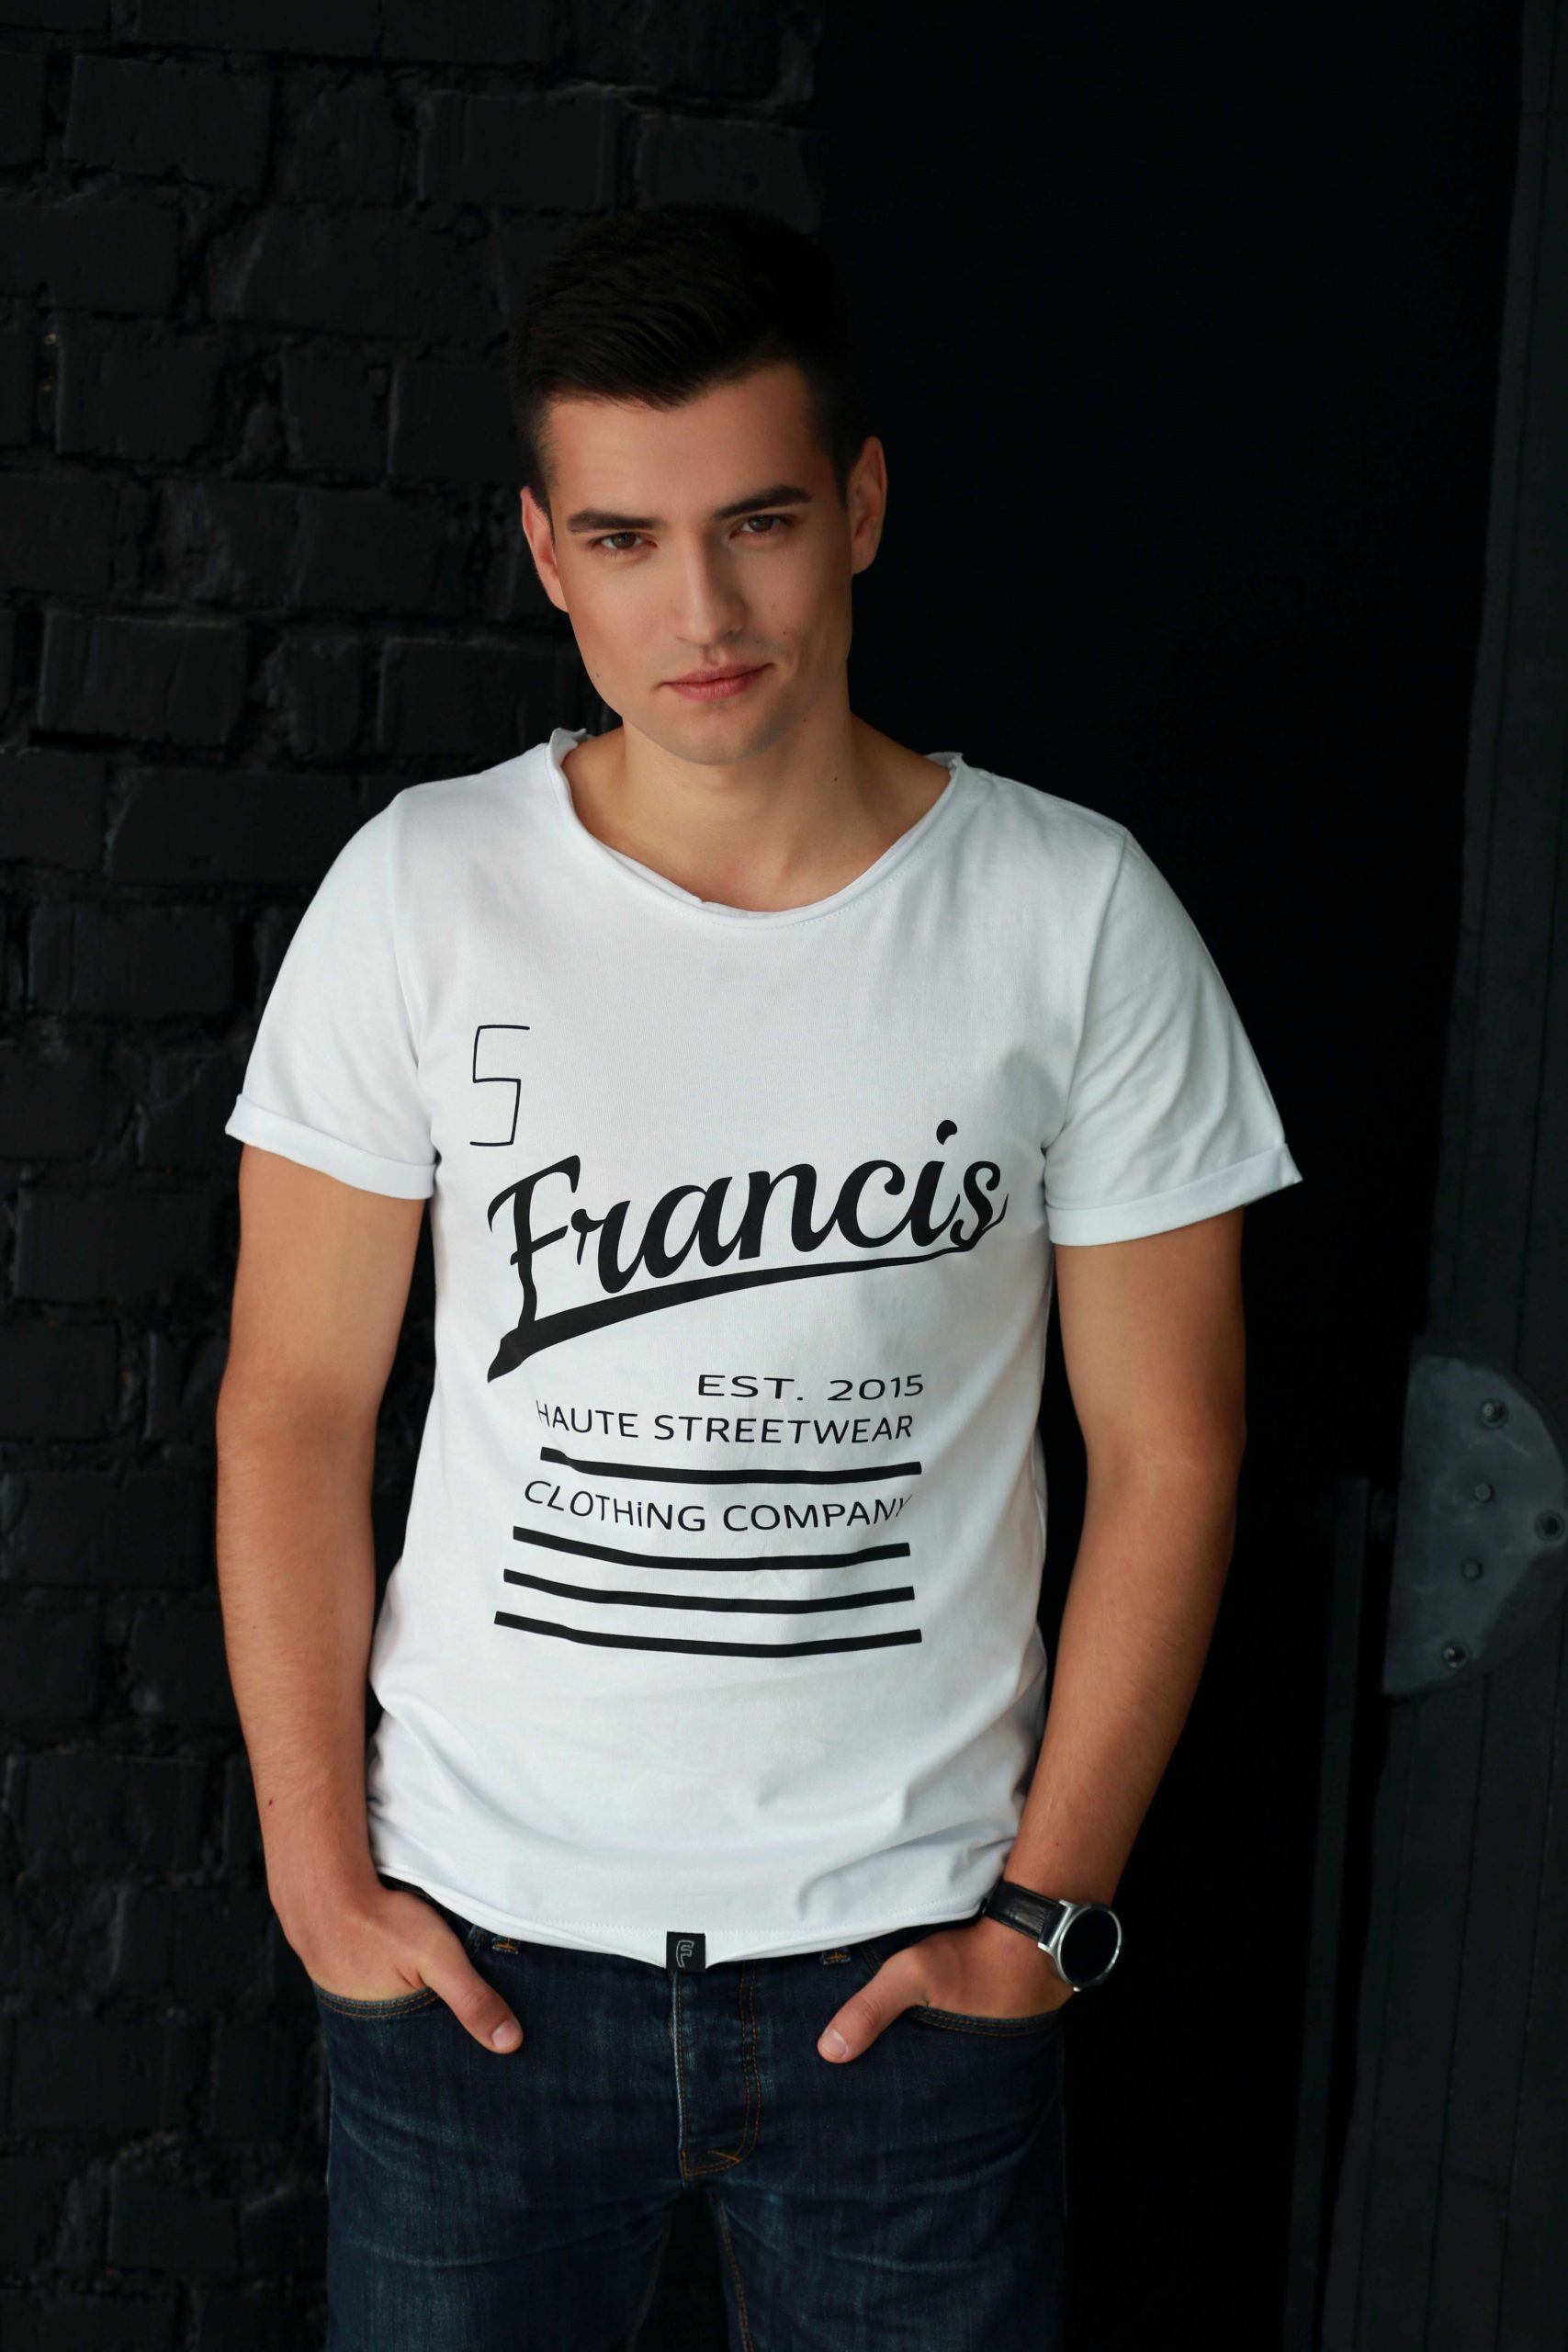 Sobriquette ik heb nodig timer Heren T-shirt wit - Fifth & Francis - casual kleding voor heren